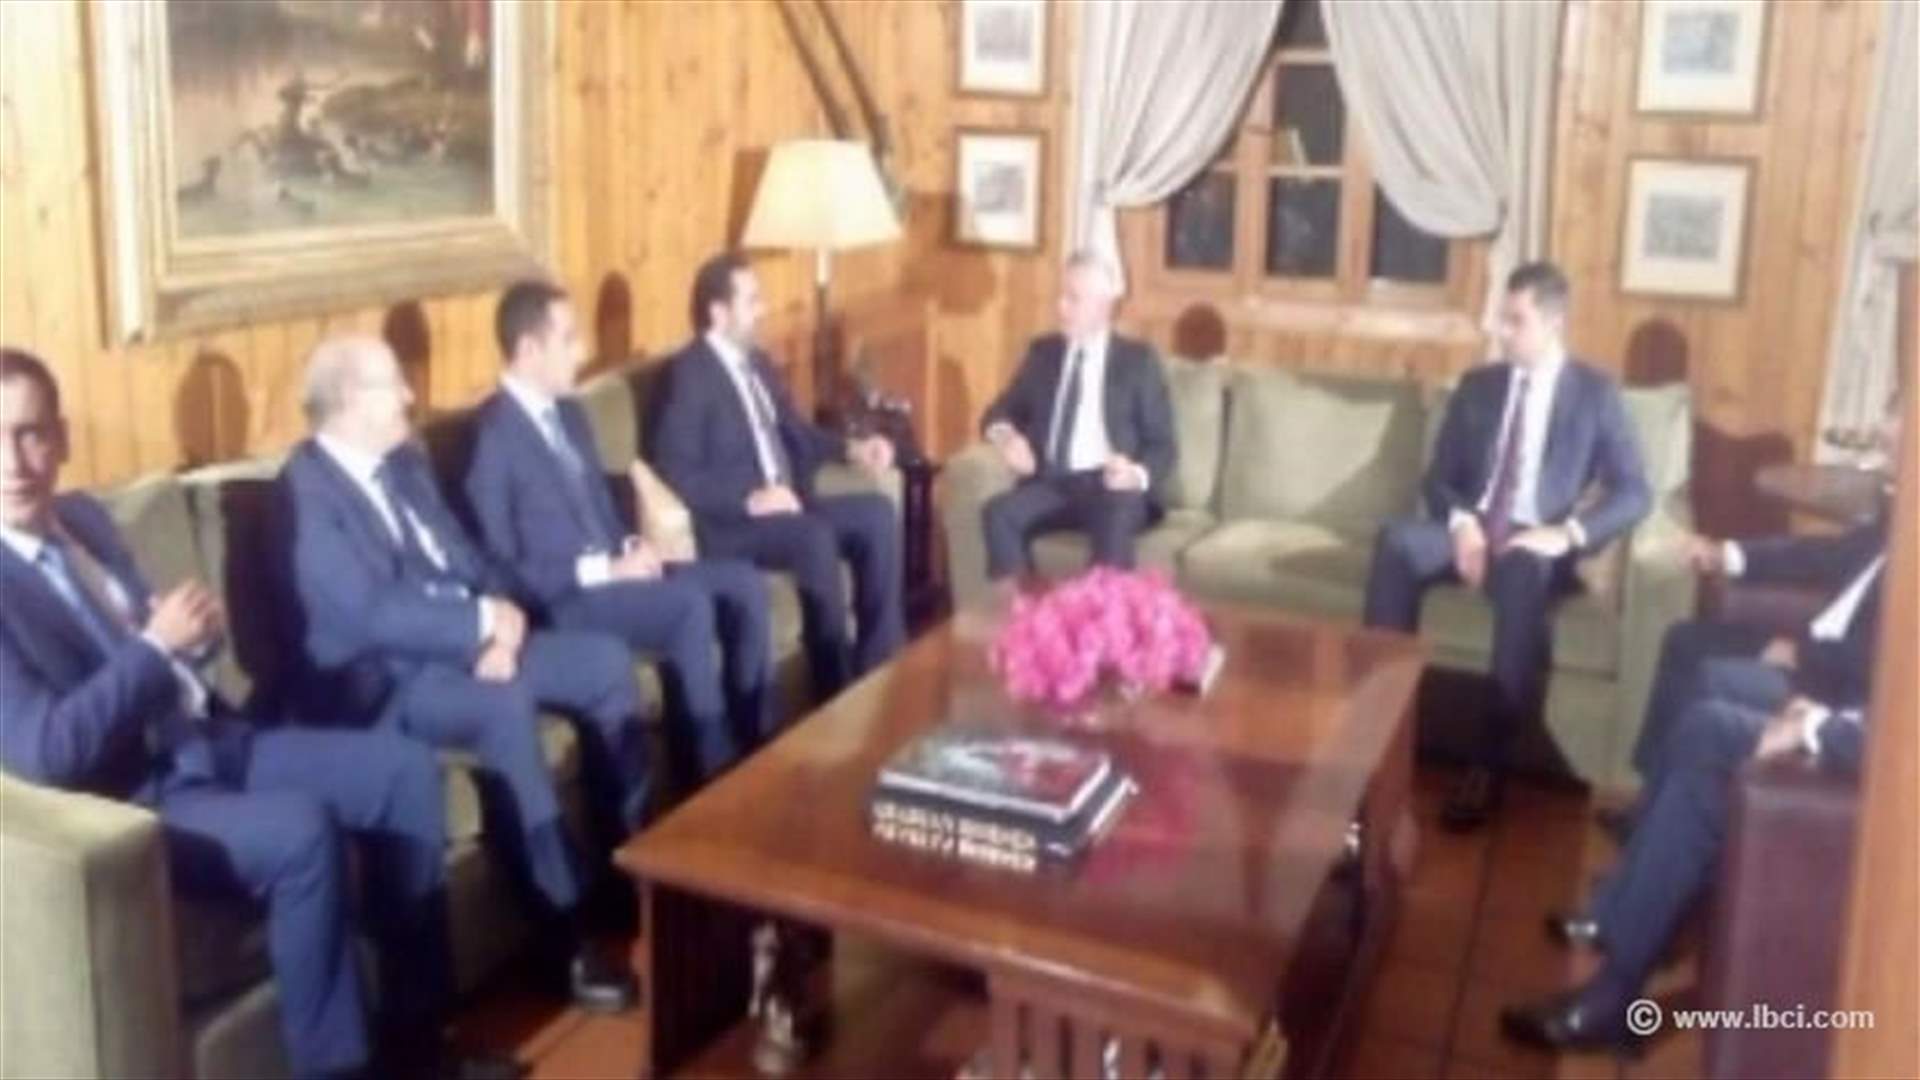 Hariri meets with Frangieh in Bnachii